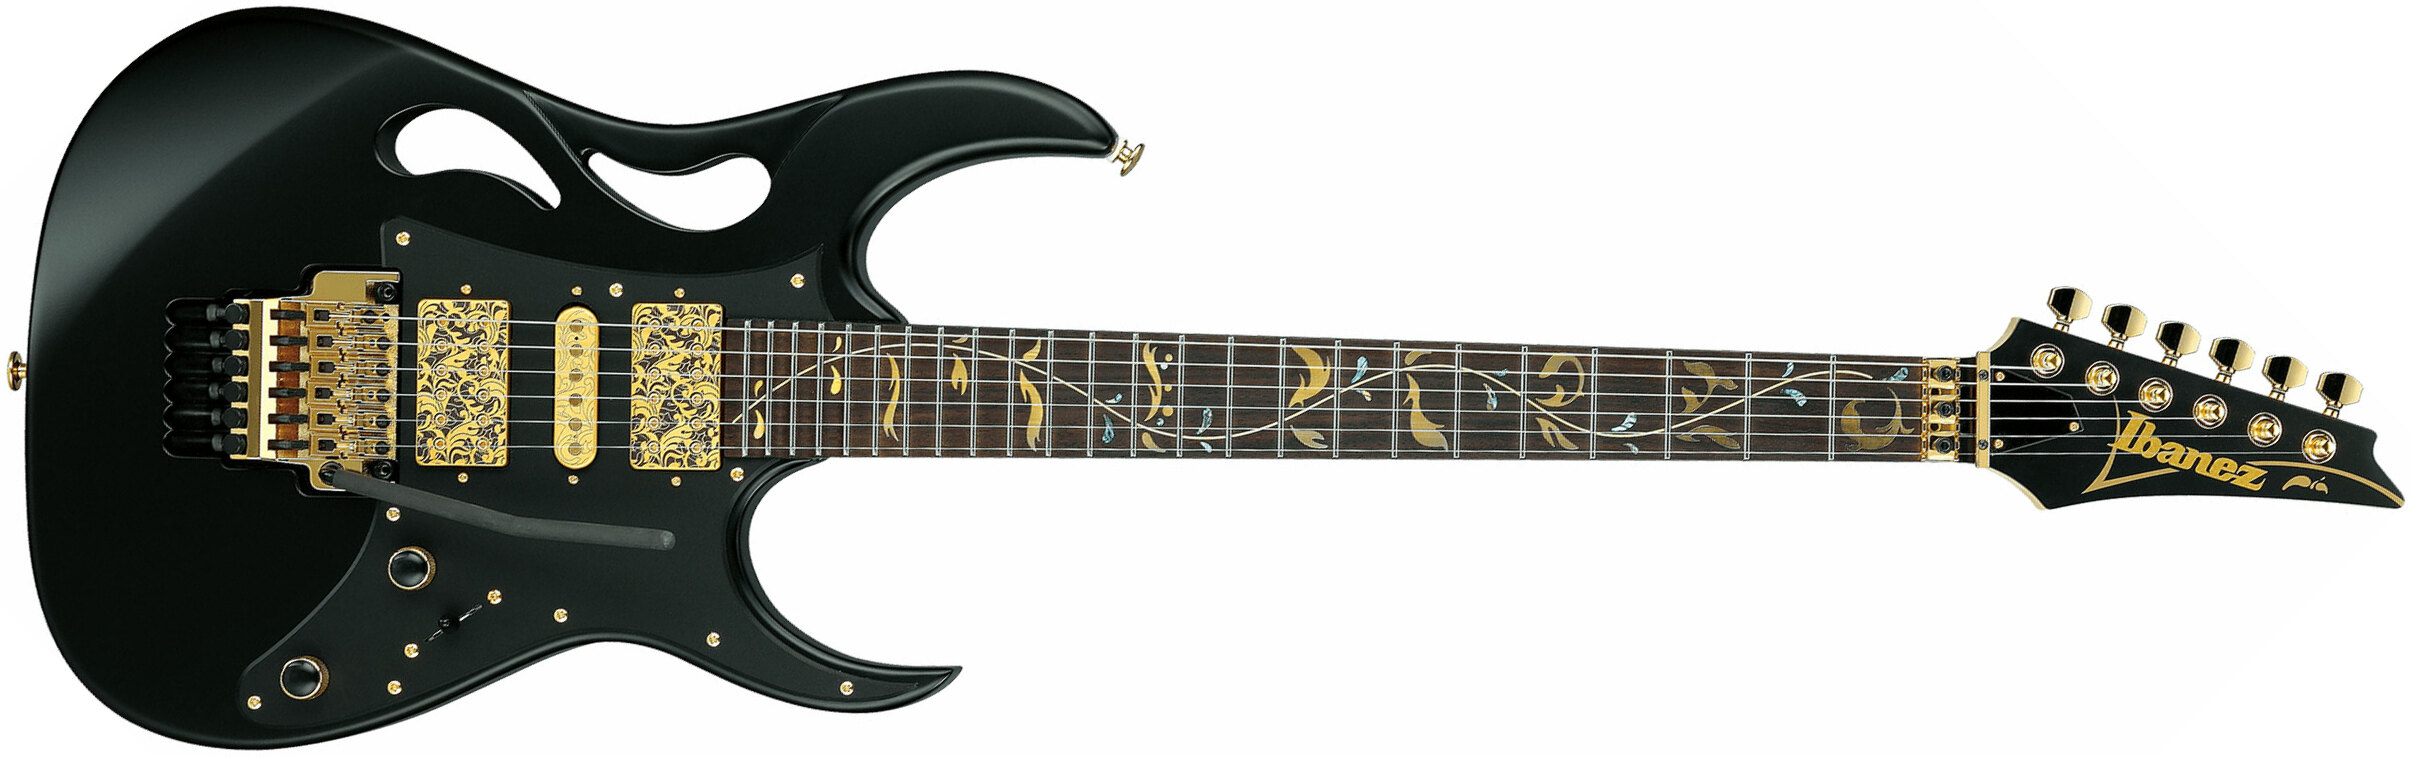 Ibanez Steve Vai Pia3761 Xb Signature Jap 2h Dimarzio Fr Rw - Onyx Black - Guitarra eléctrica con forma de str. - Main picture